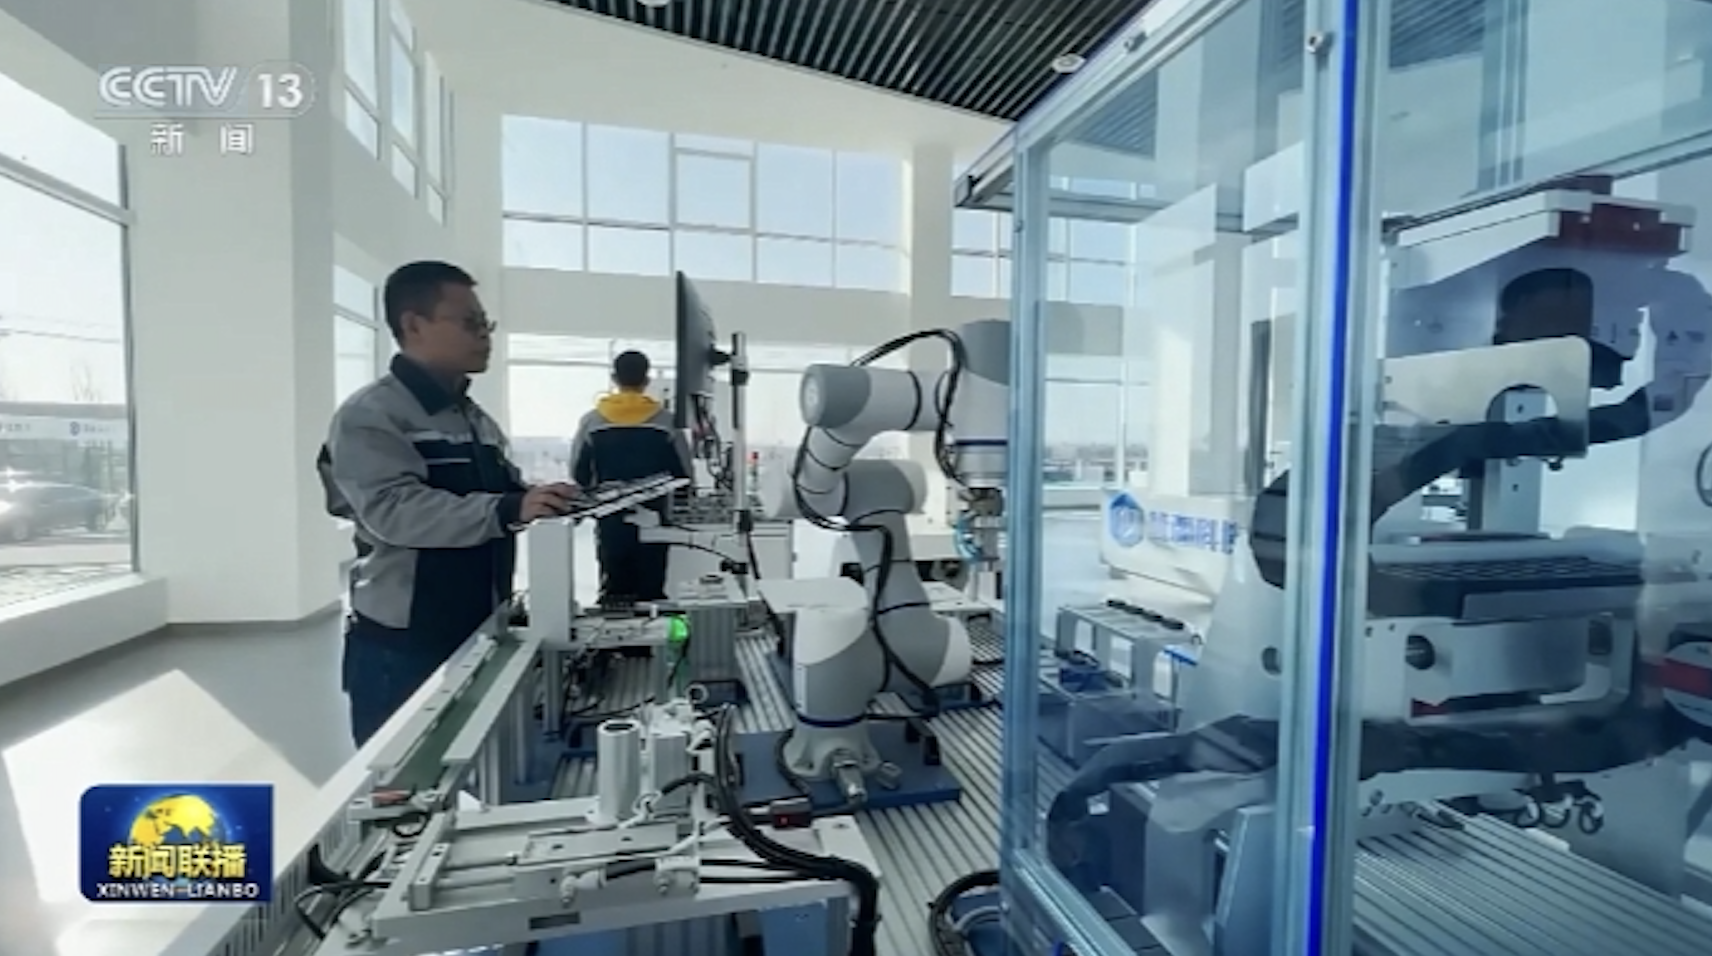 越疆协作机器人再登央视新闻联播，为新型工业化发展注入强劲动力